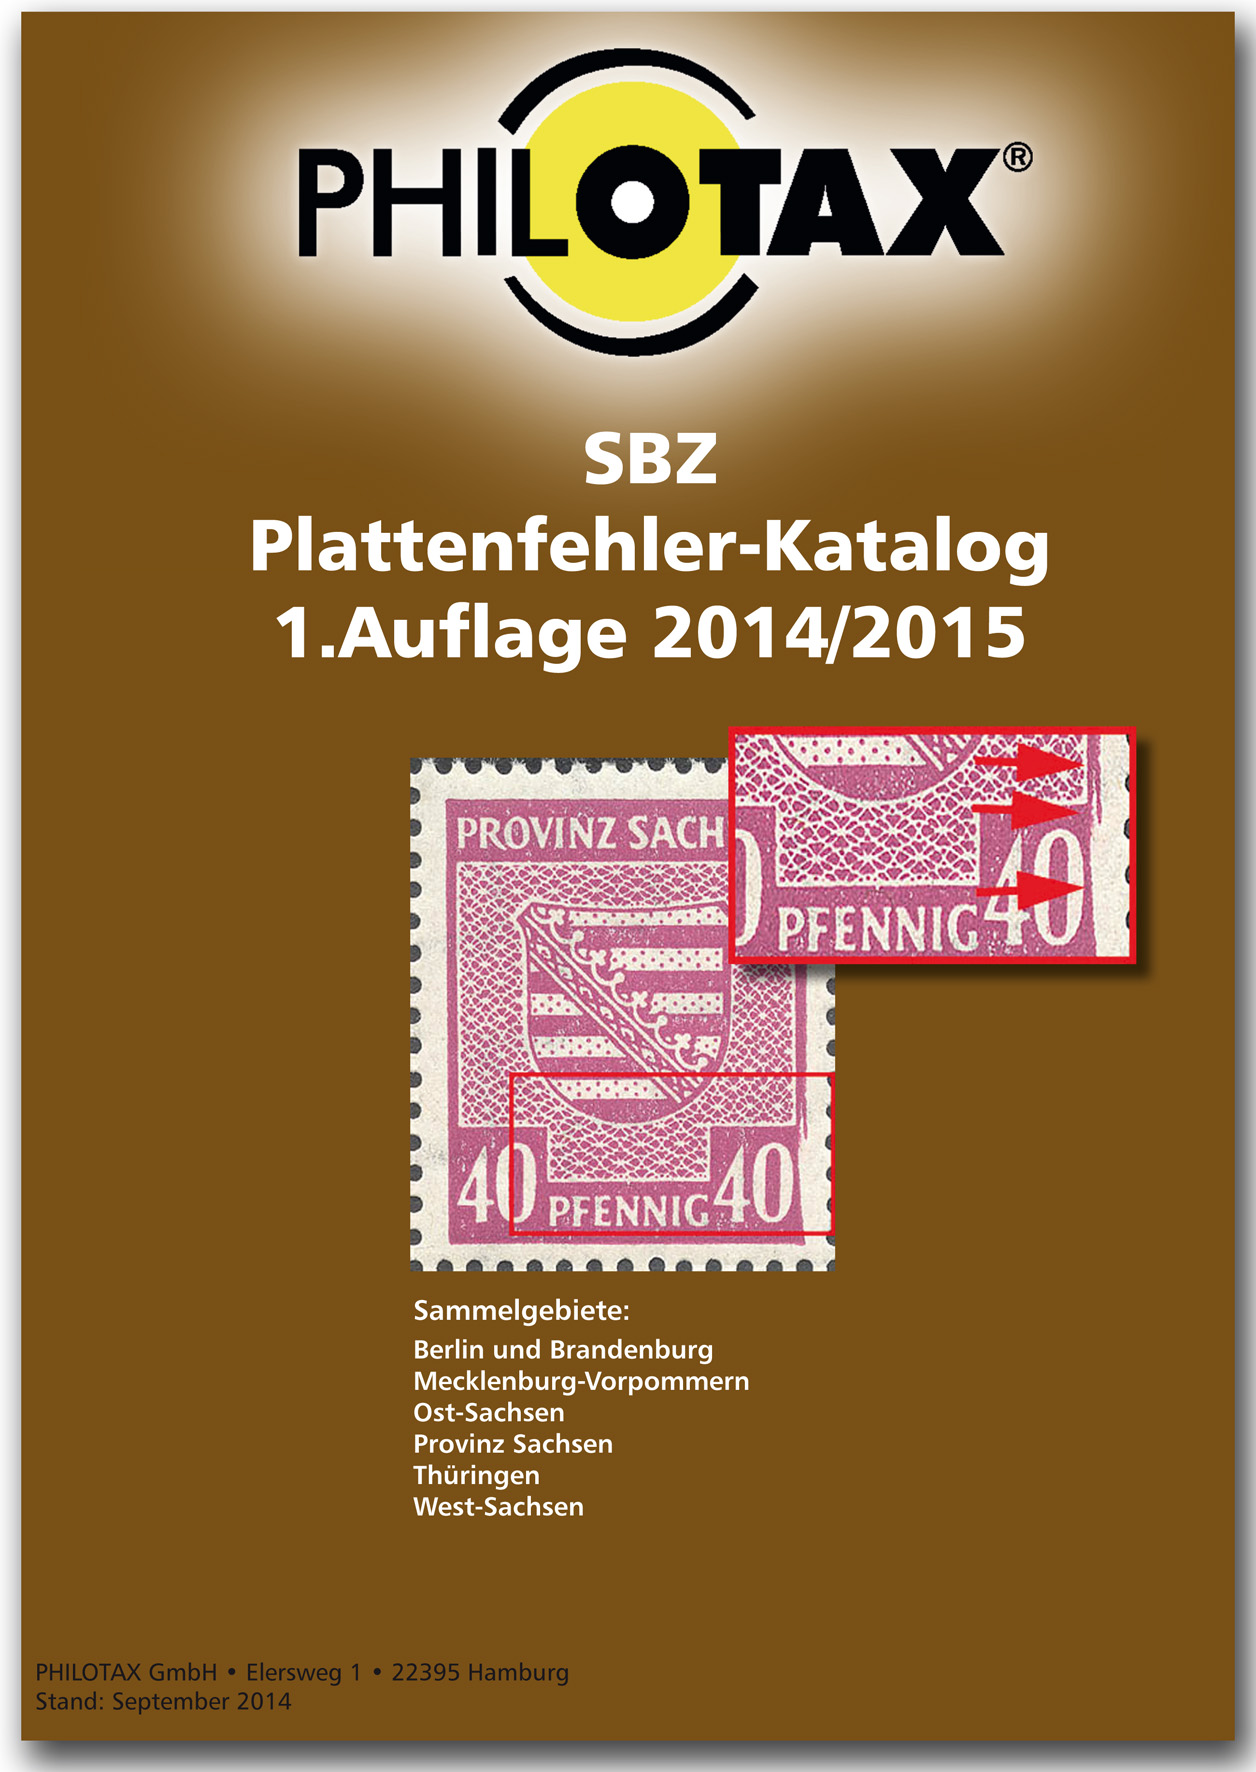 Philotax Gedruckter SBZ Plattenfehler-Katalog 2014